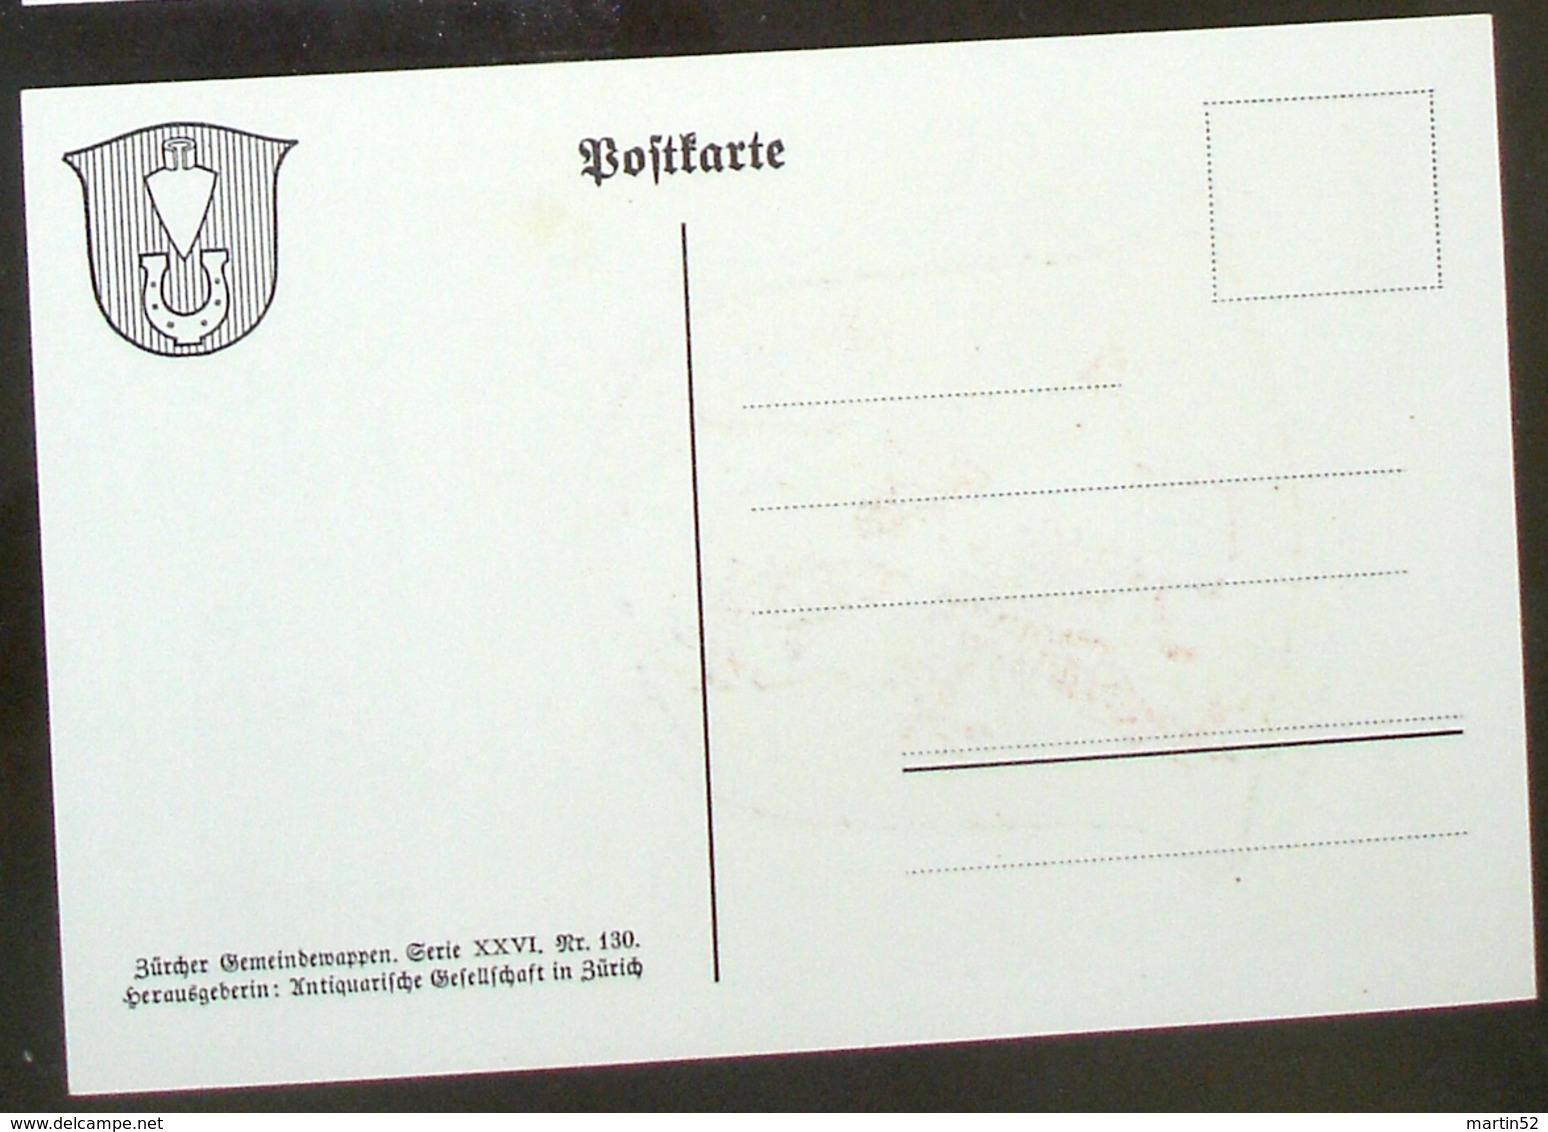 LITHO Gemeindewappen Aus Den 1930er-Jahren Oerlikon (Blanko-Karte Serie XXVI Nr. 130 Der Antiquarischen Gesellschaft ZH) - Oerlikon